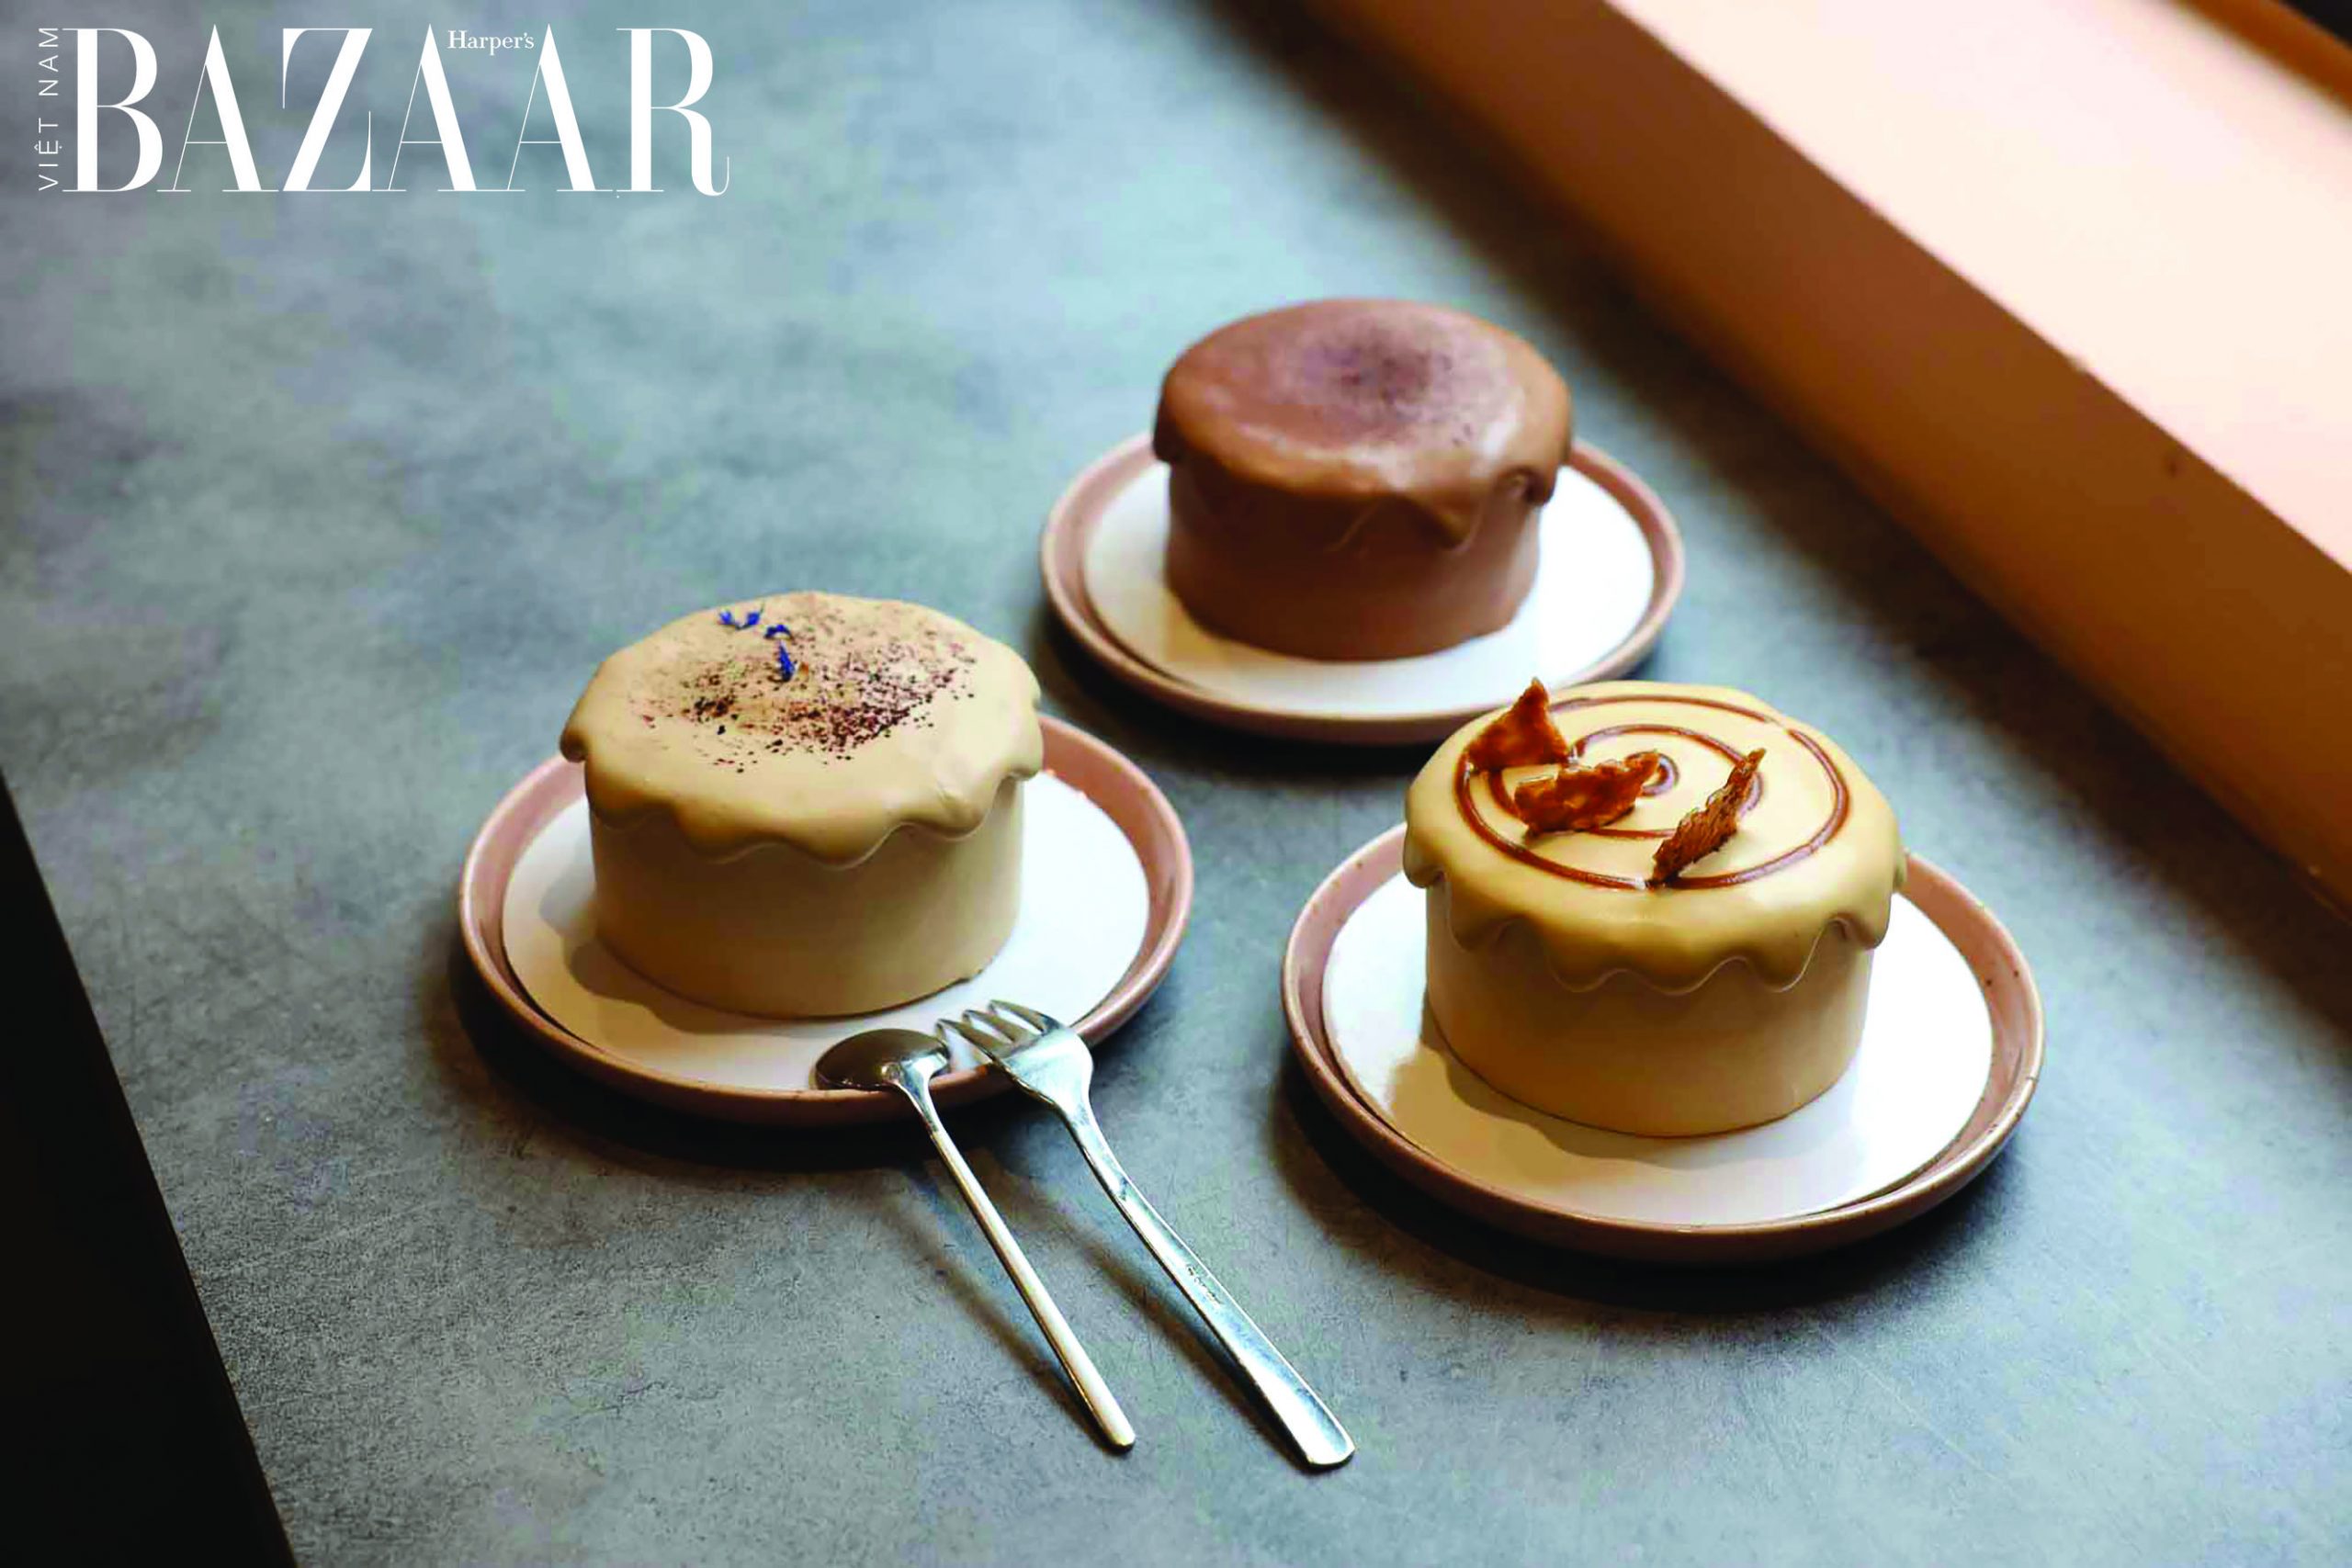 Harpers Bazaar Godmother bake brunch nha hang 03 scaled - Godmother Bake & Brunch: Nơi ăn sáng và trưa thời thượng tại Sài Thành